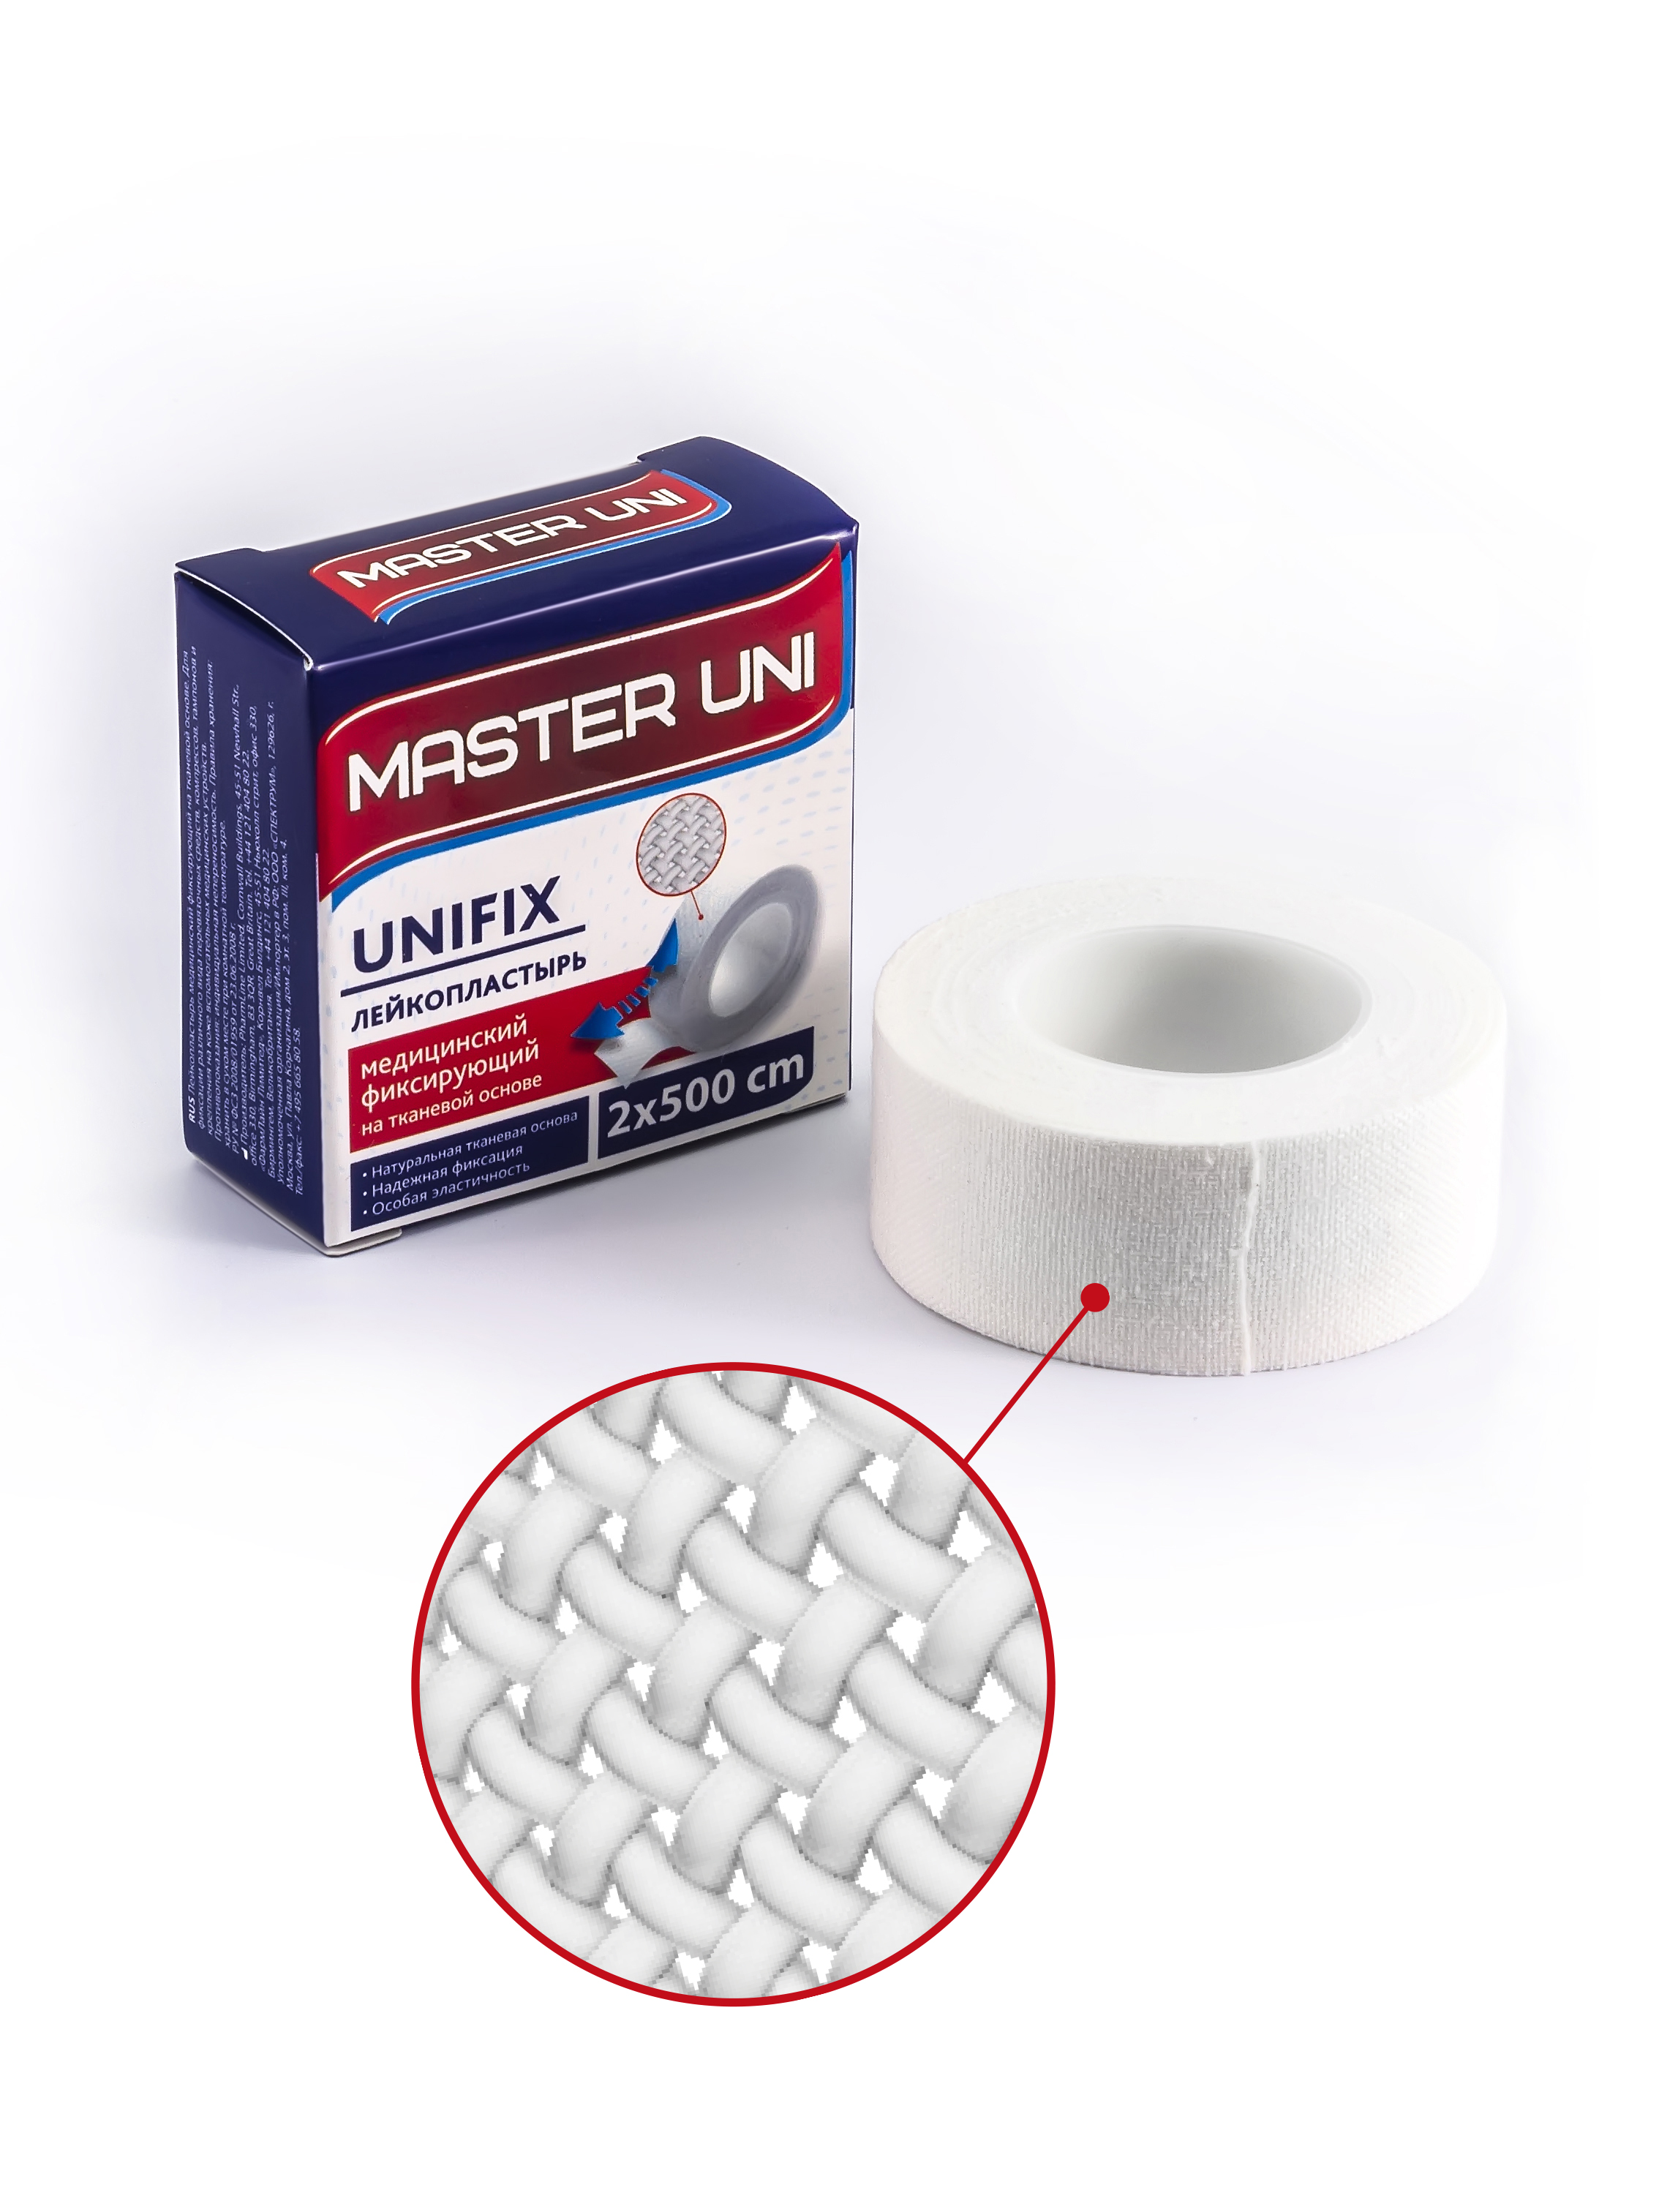 Купить MASTER UNI UNIFIX Лейкопластырь 2 х 500 см на тканевой основе, Пластырь Master Uni Unifix фиксирующий на тканевой основе 2 х 500 см